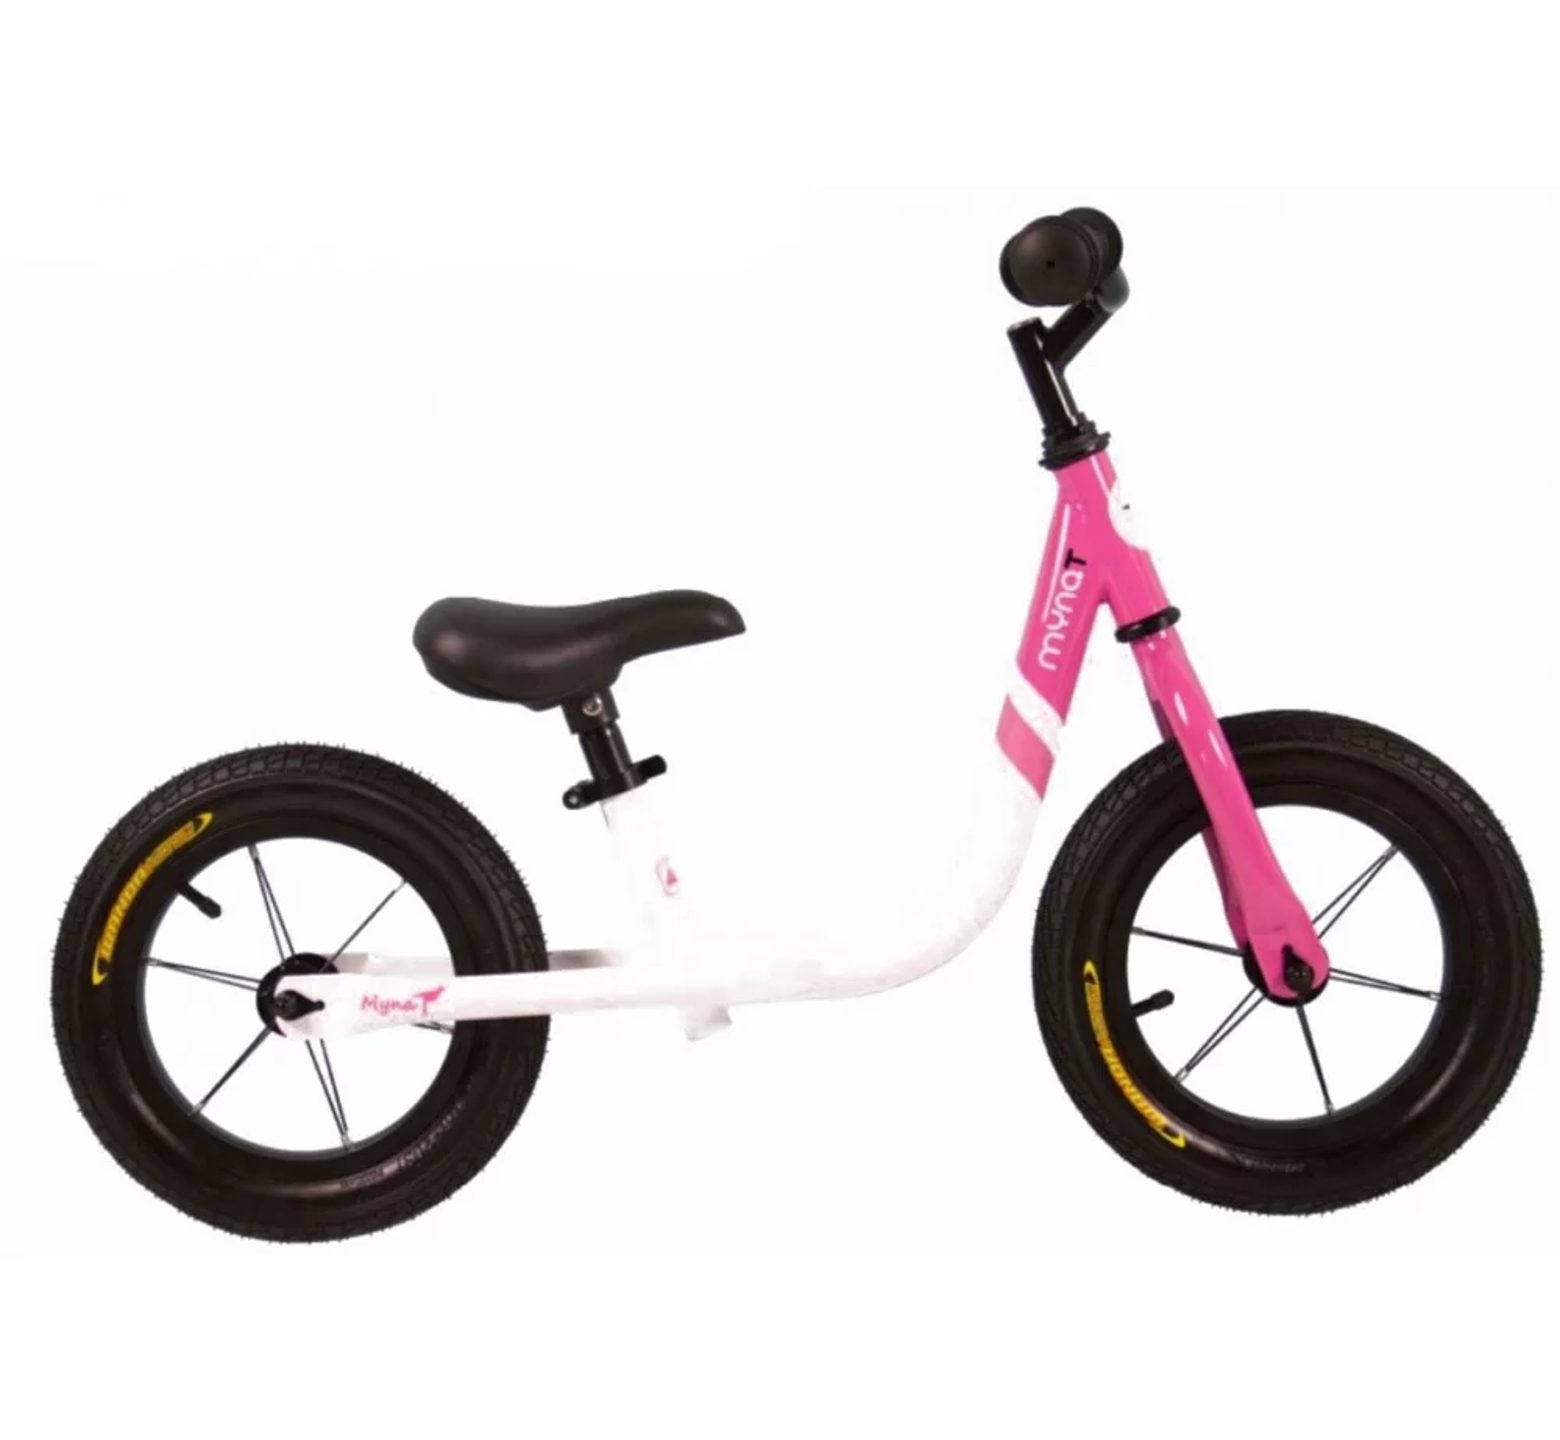 Ποδήλατο ισορροπίας Mynat με δερμάτινη σέλα άσπρο ροζ